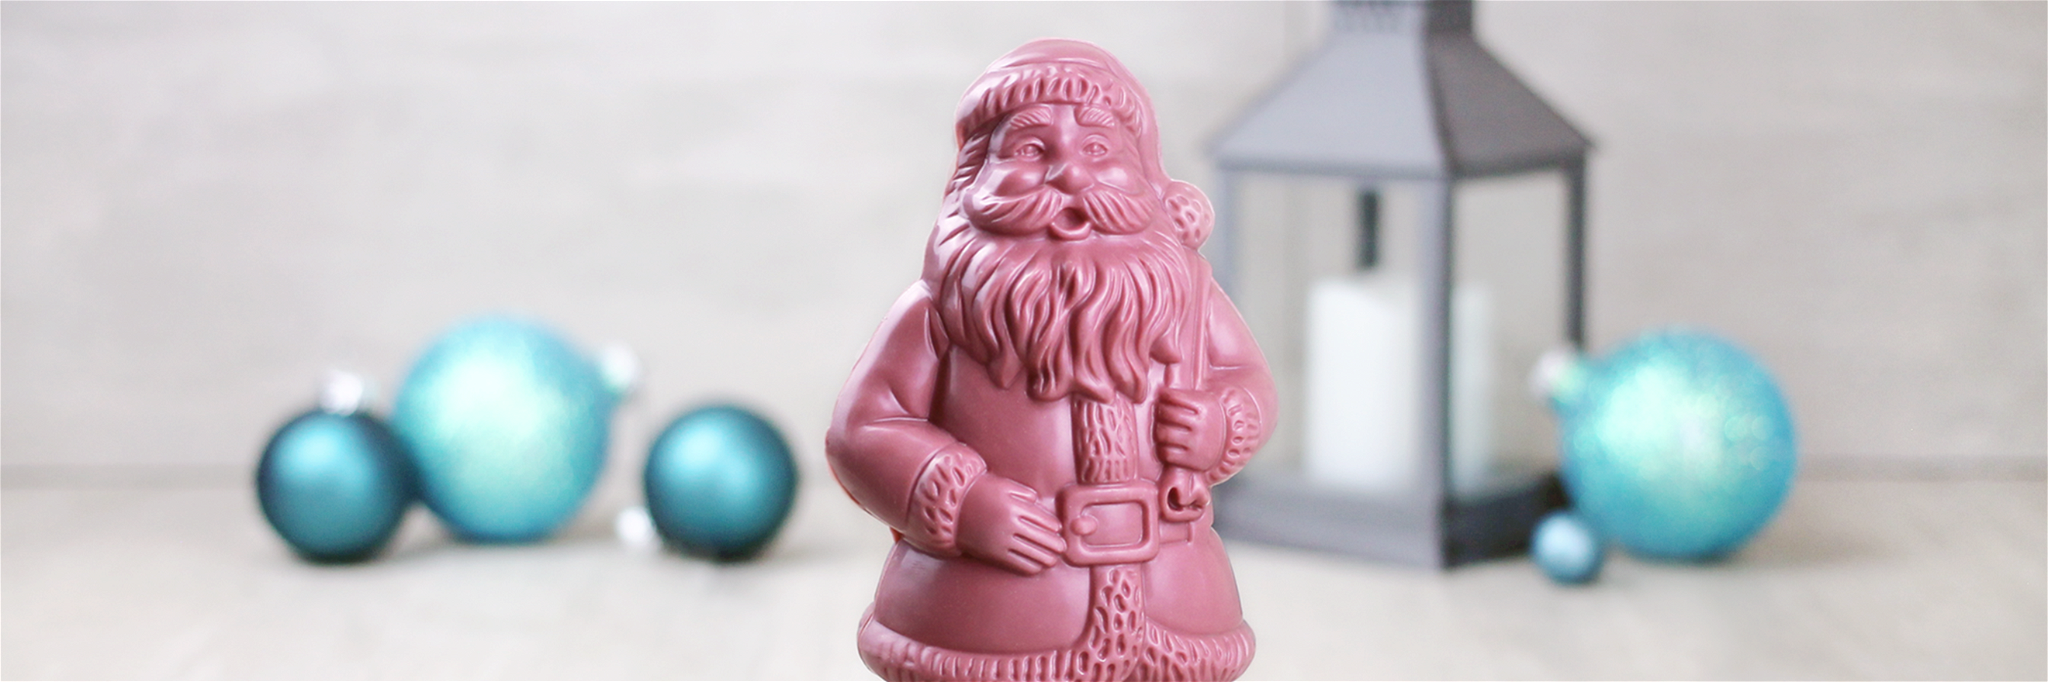 Wie wäre es in diesem Jahr mit einem Weihnachtsmann aus Ruby-Schokolade?&nbsp;